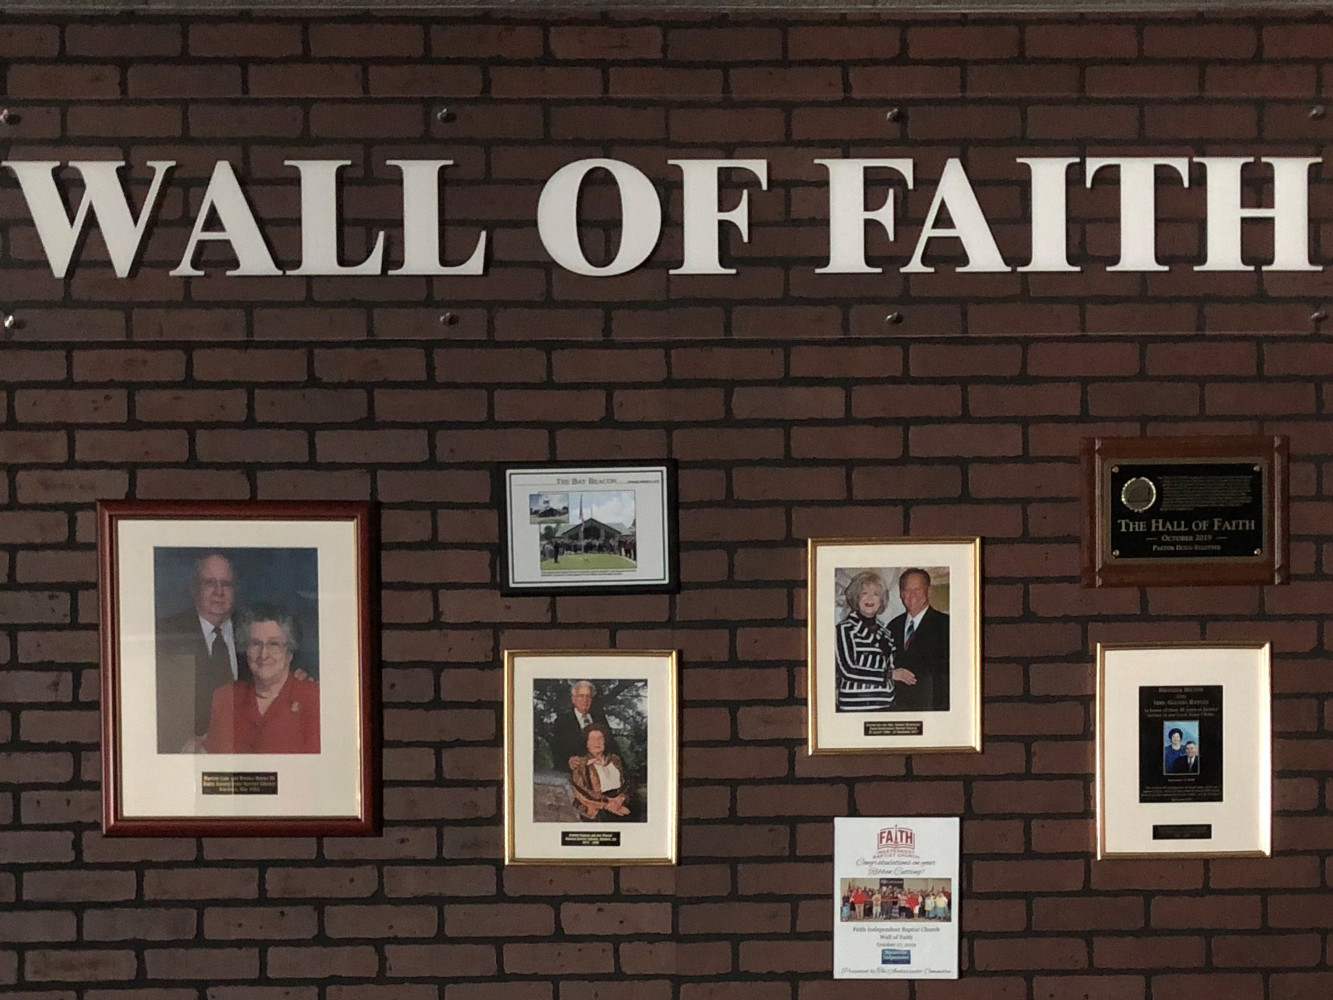 Wall of Faith in the Hall of Faith